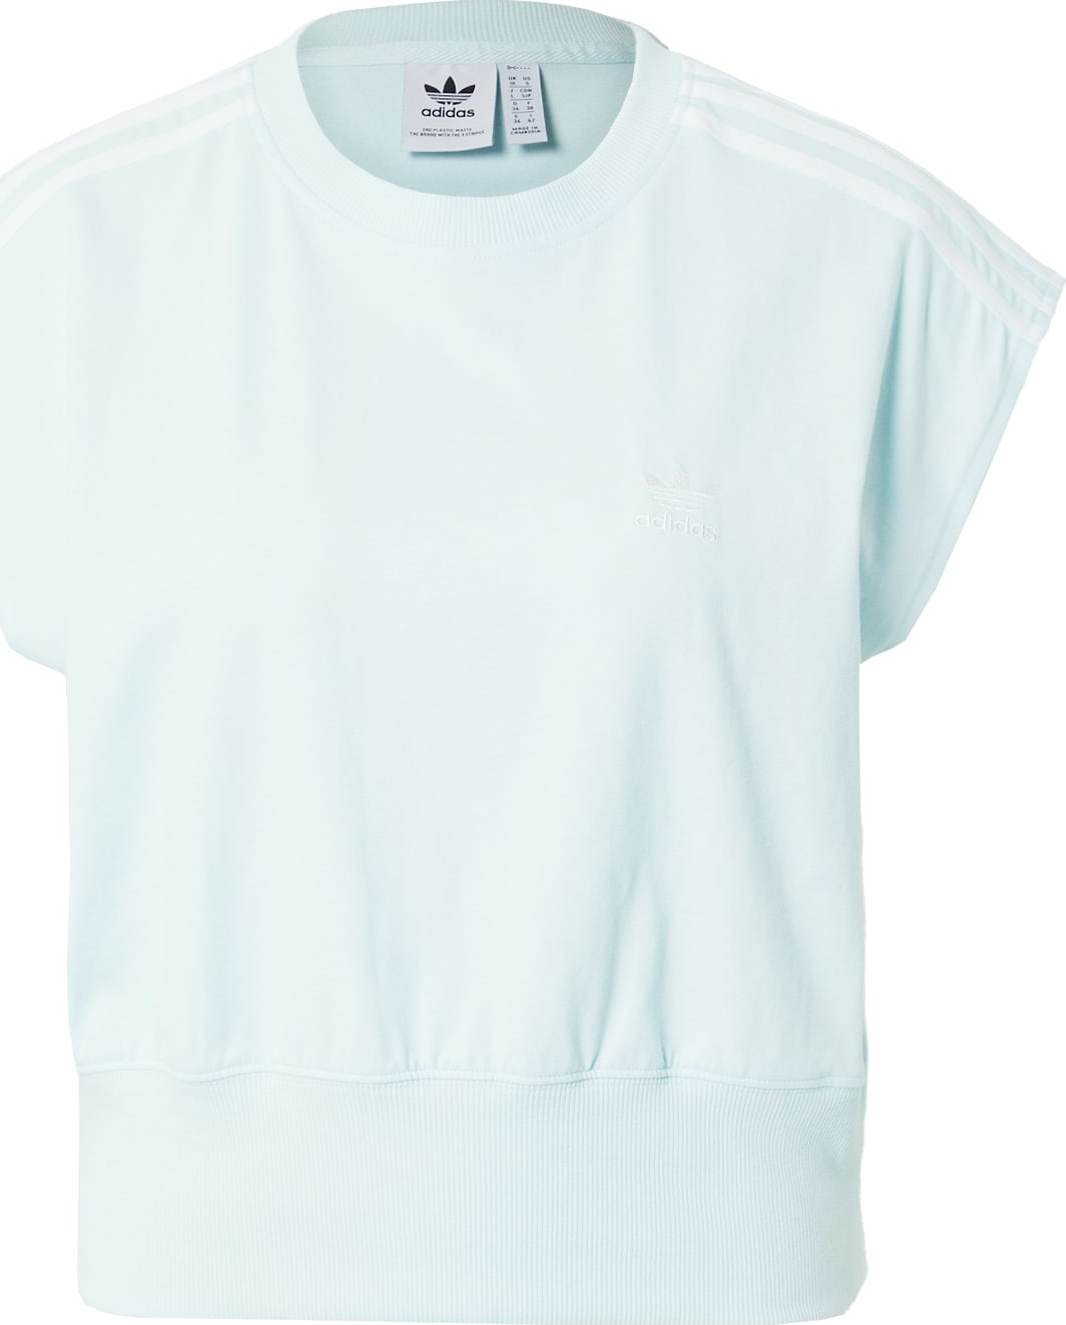 ADIDAS ORIGINALS Tričko pastelová modrá / bílá